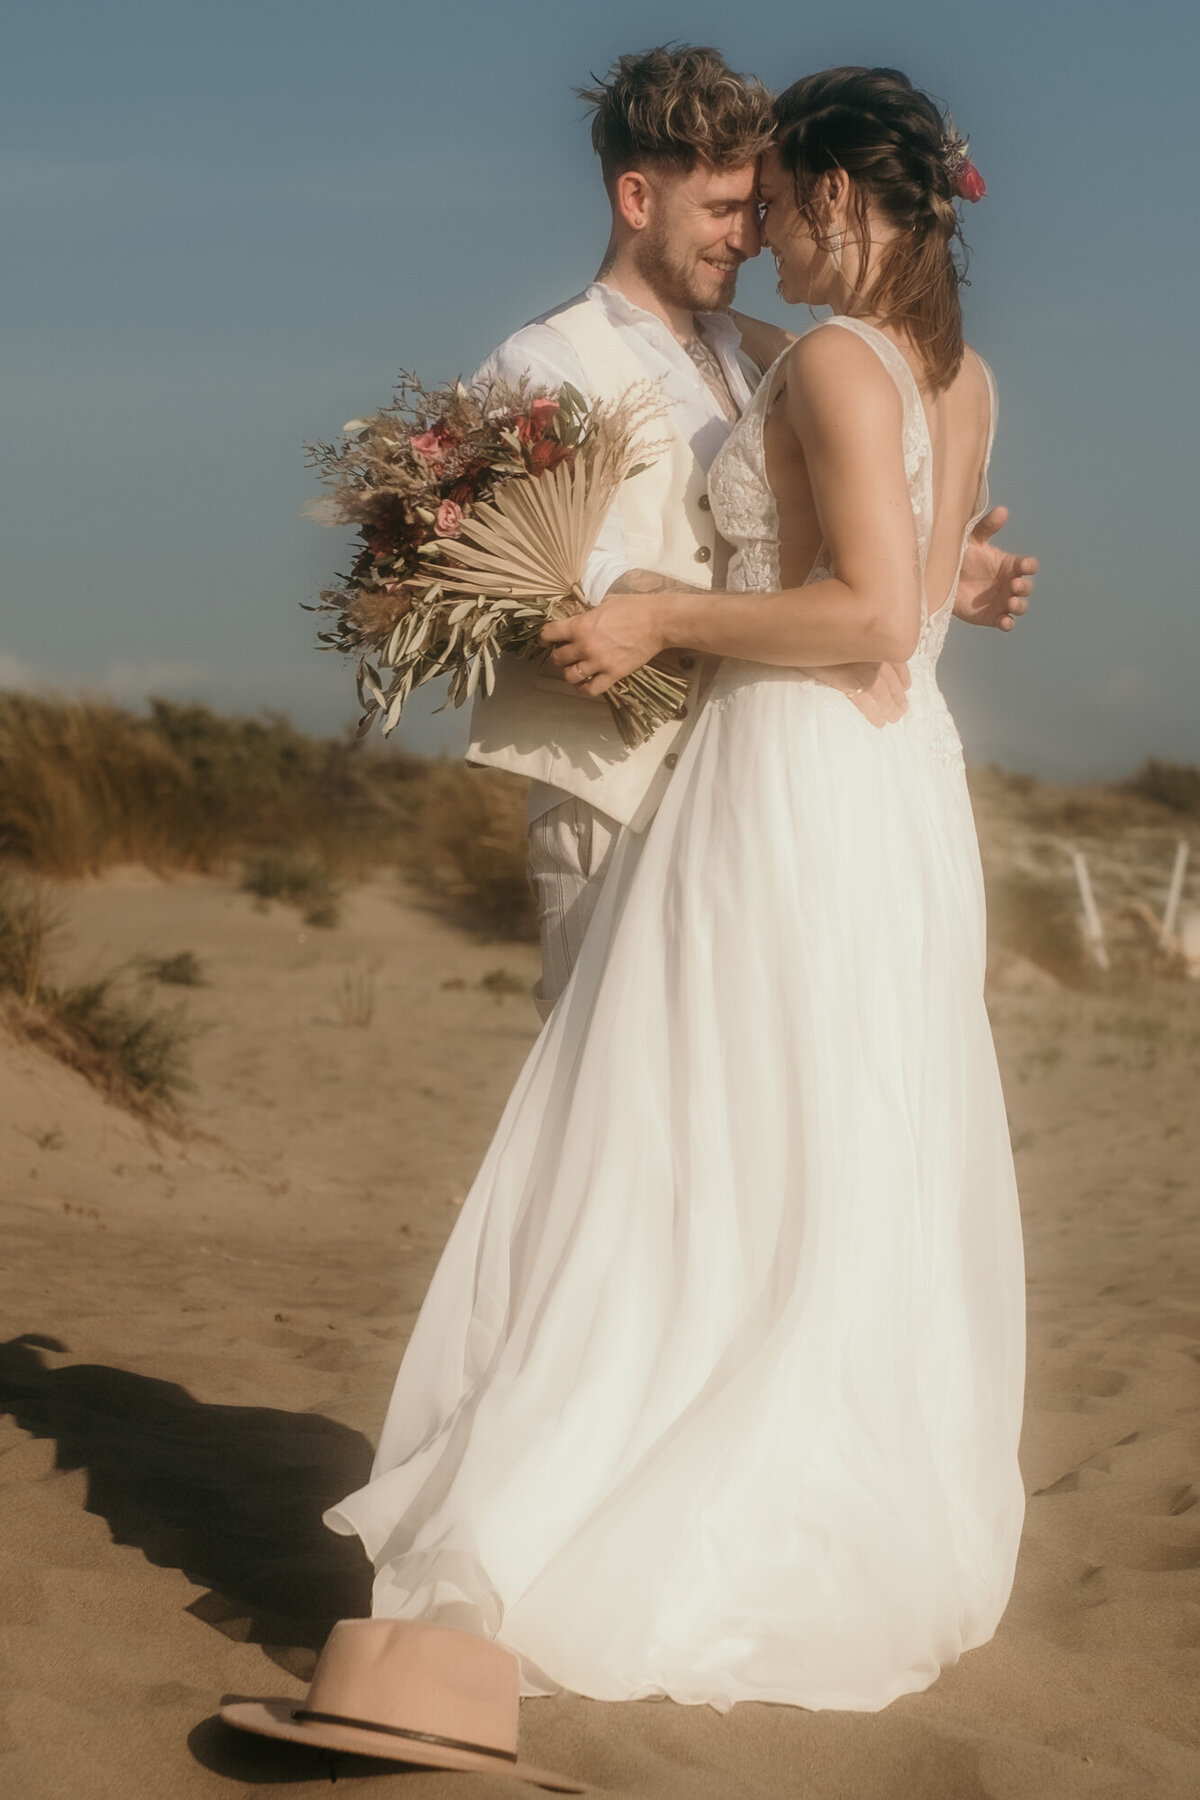 Die Stirnen aneinander gelehnt, steht das Hochzeitspaar in einer Umarmung am Strand.